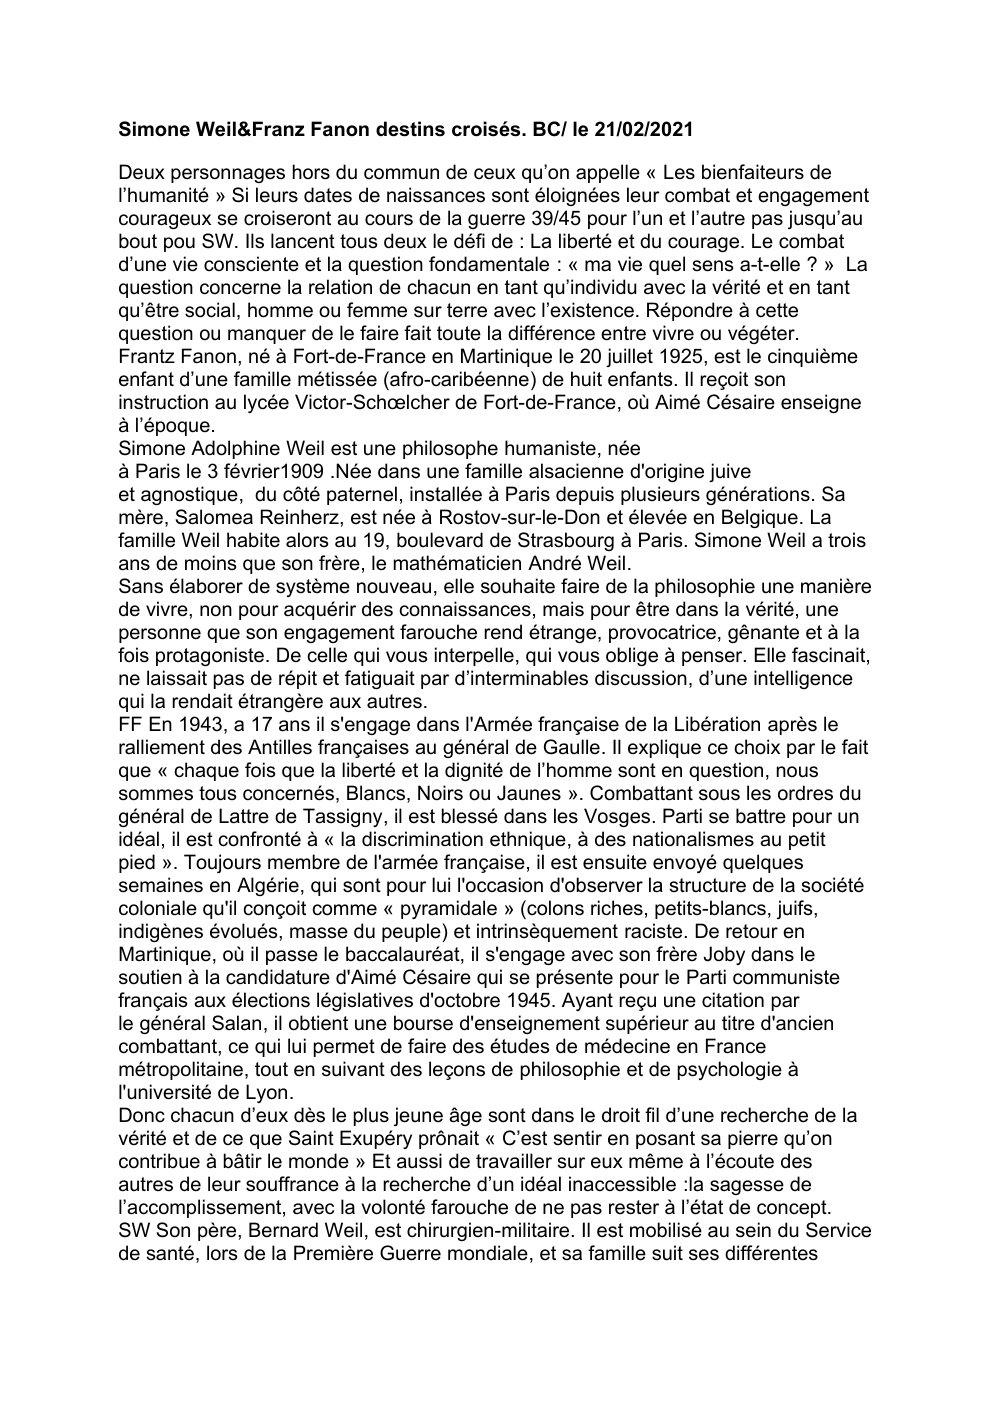 Prévisualisation du document Destins croisés Simone Weil & Franz Fanon